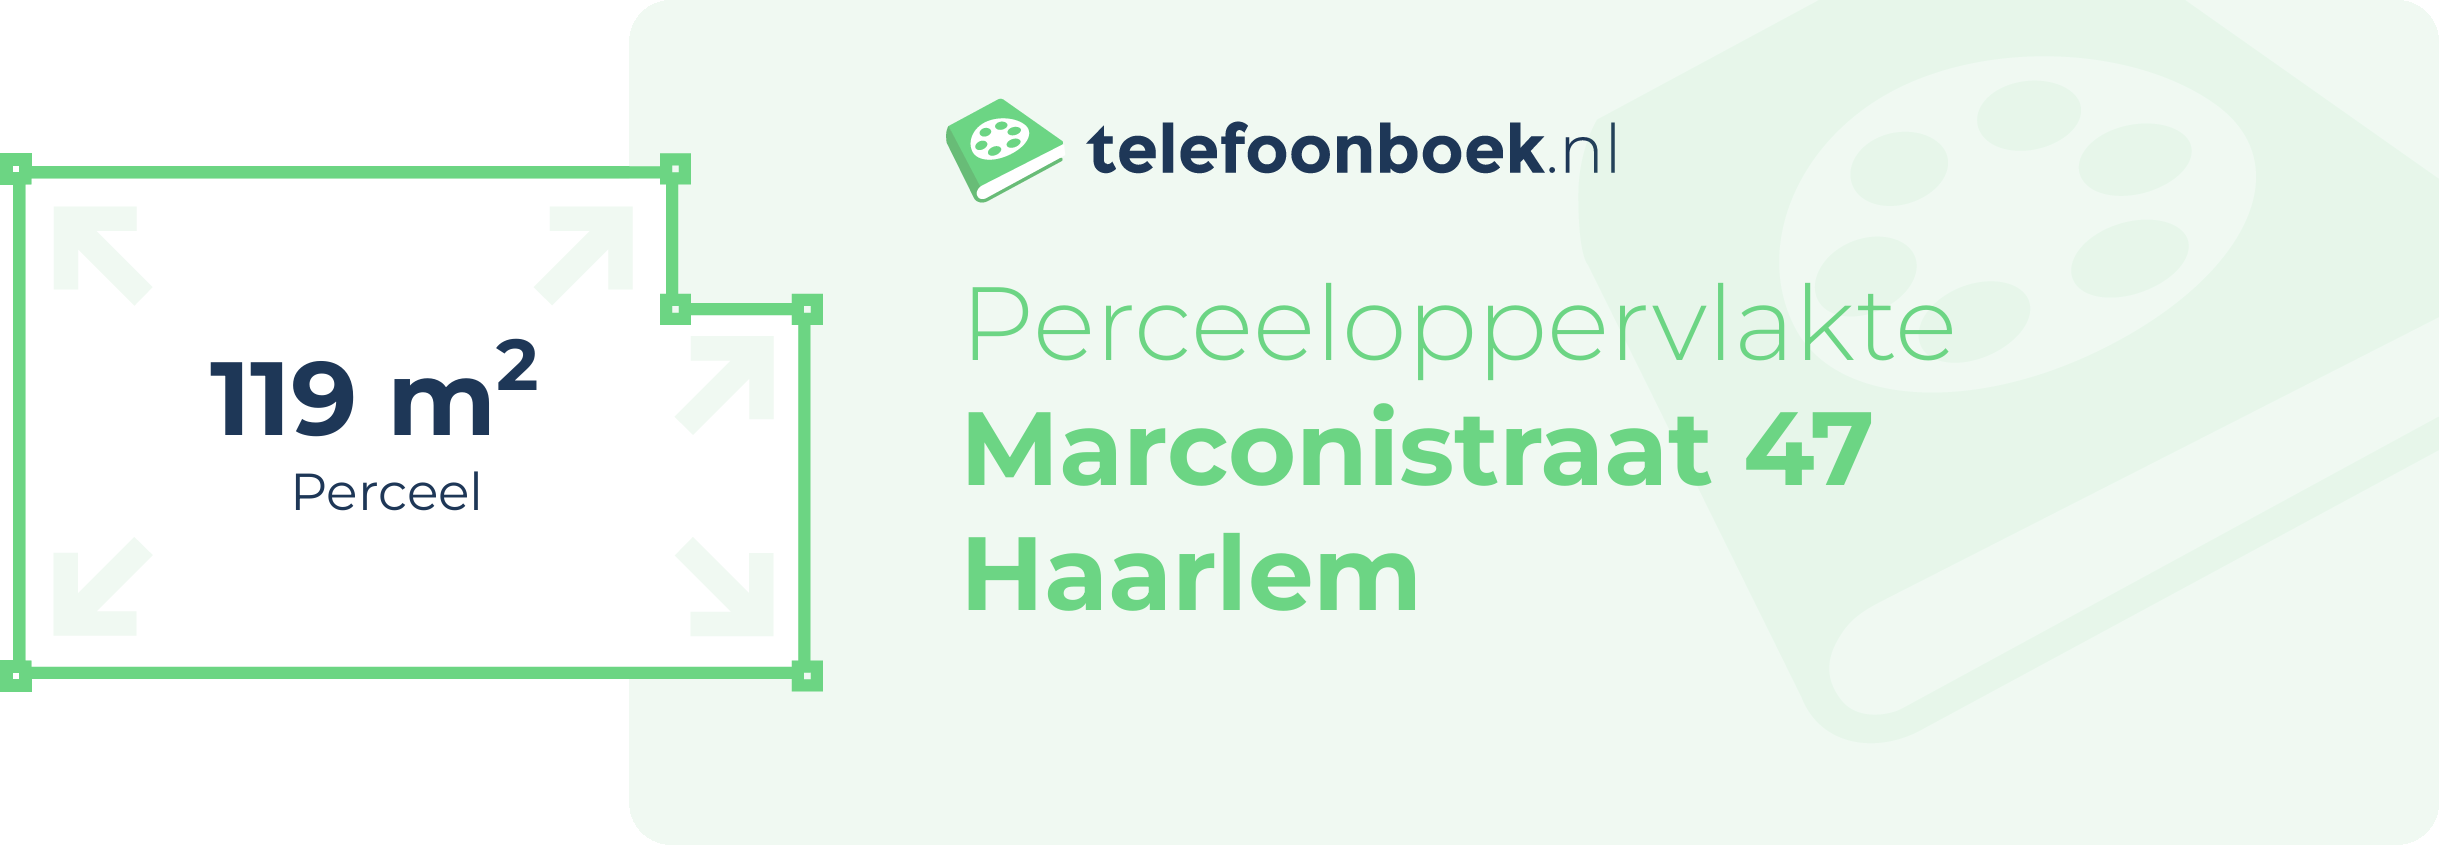 Perceeloppervlakte Marconistraat 47 Haarlem